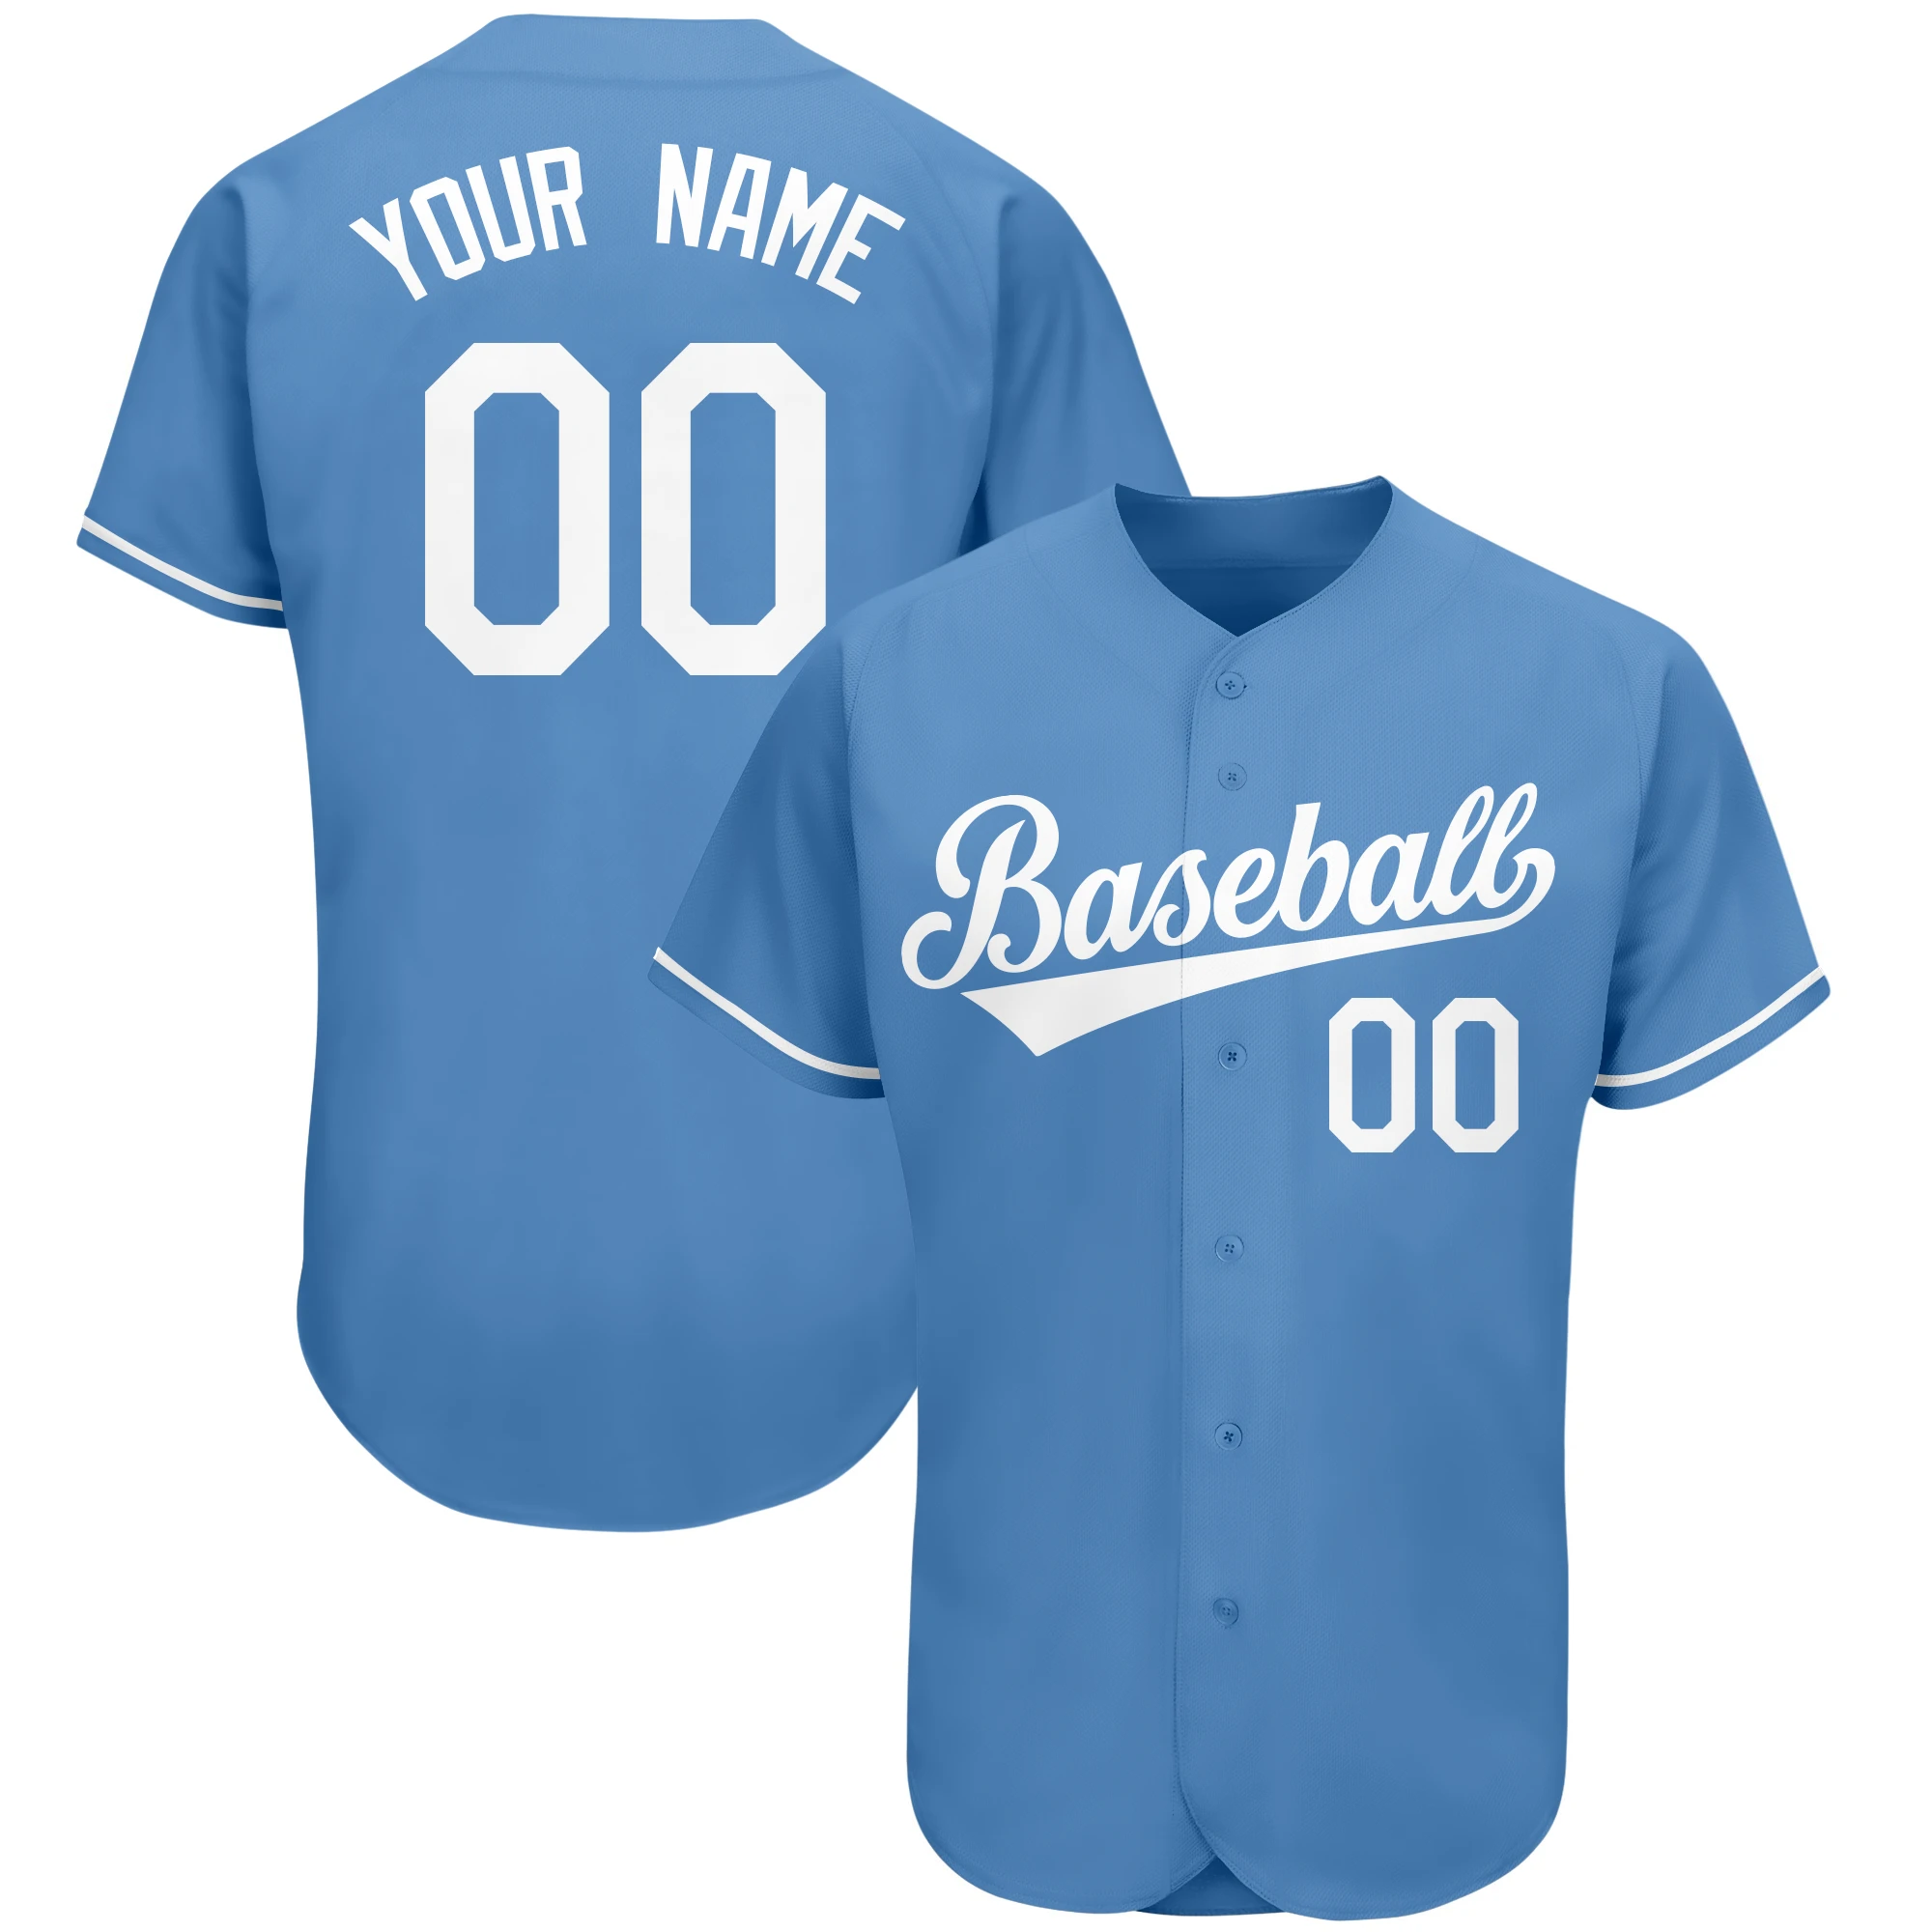 Custom Honkbal Jerseys Baseball Shirts Mannen T shirts Gedrukt Met Team Naam Nummer Fans Softbal Uniform Jeugd|Baseball T-shirts| - AliExpress